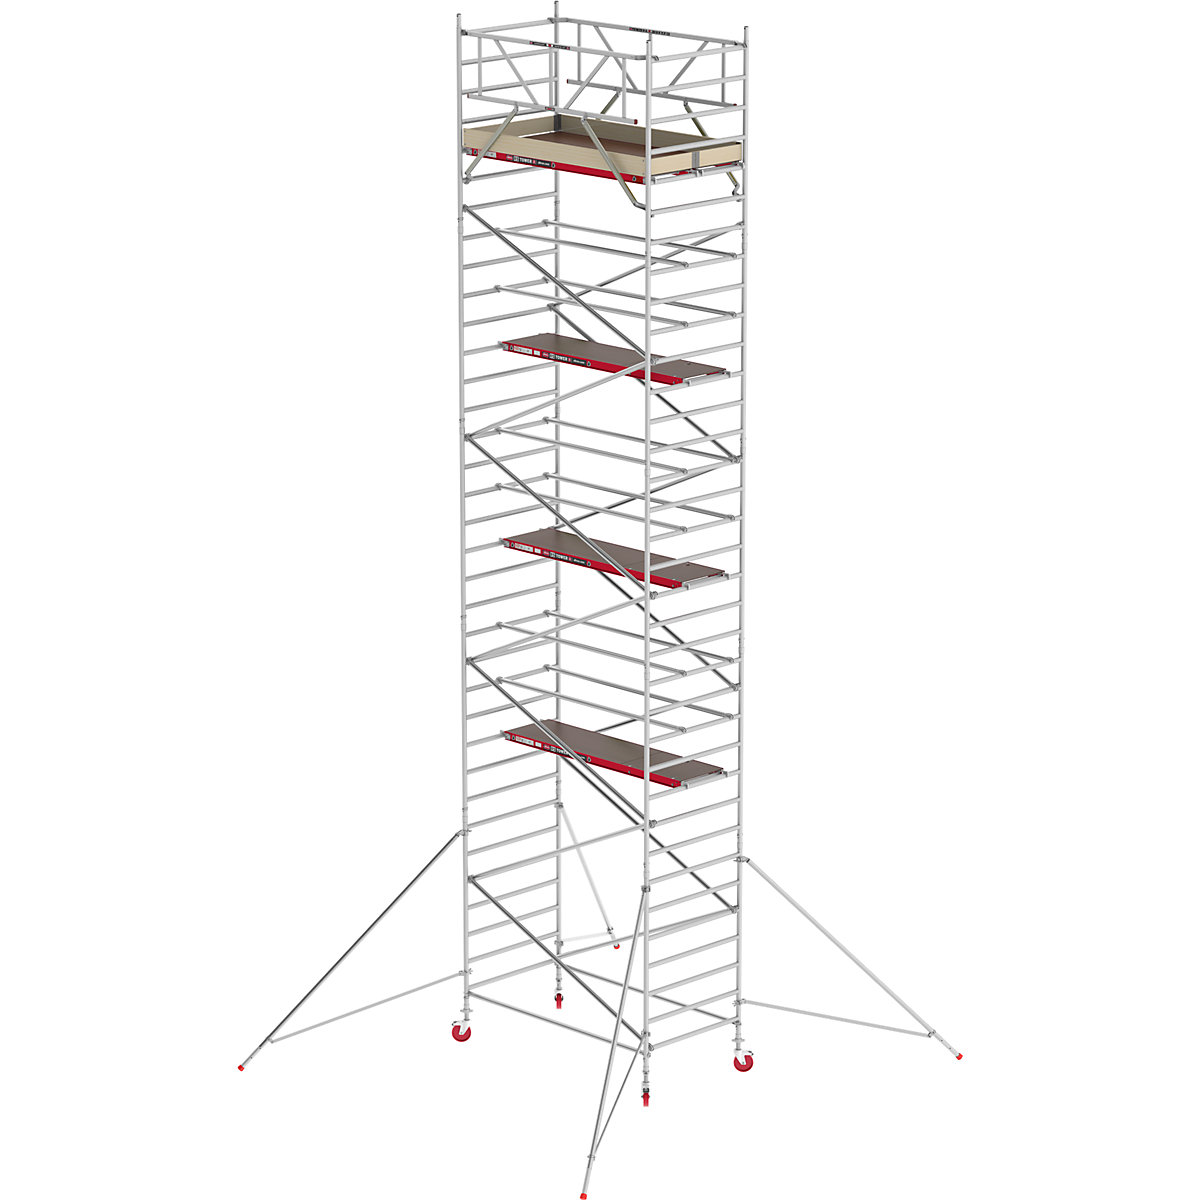 Altrex Fahrgerüst RS TOWER 42 breit, Holzplattform, Länge 1,85 m, Arbeitshöhe 11,20 m